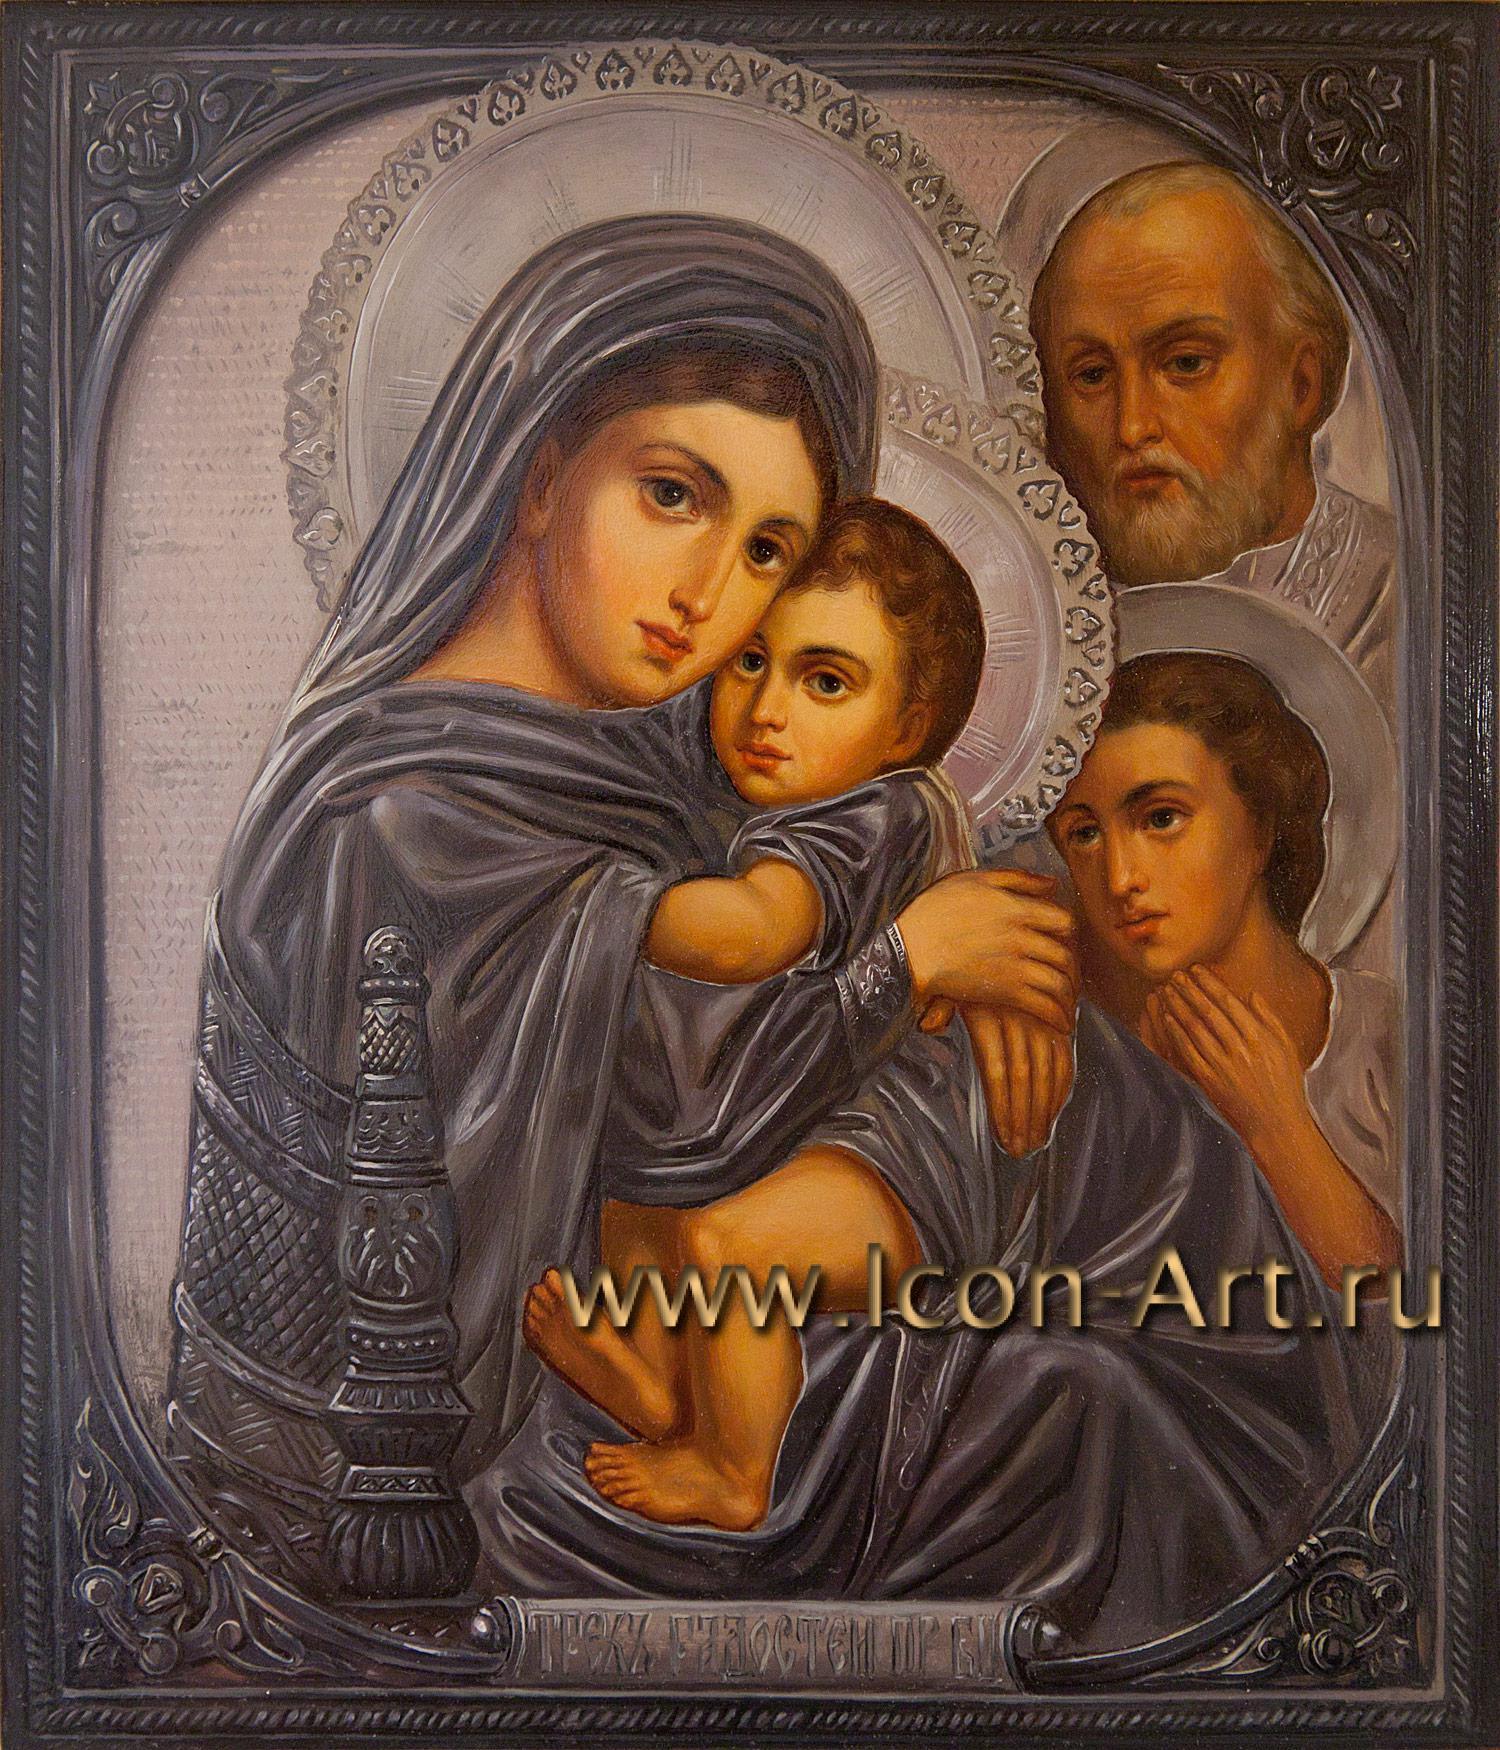 3 богородица дева. Икона Божией матери трех радостей. Икона Богородицы трех радостей. Икона трех радостей Рафаэля. Чудотворная икона Богородицы трех радостей.